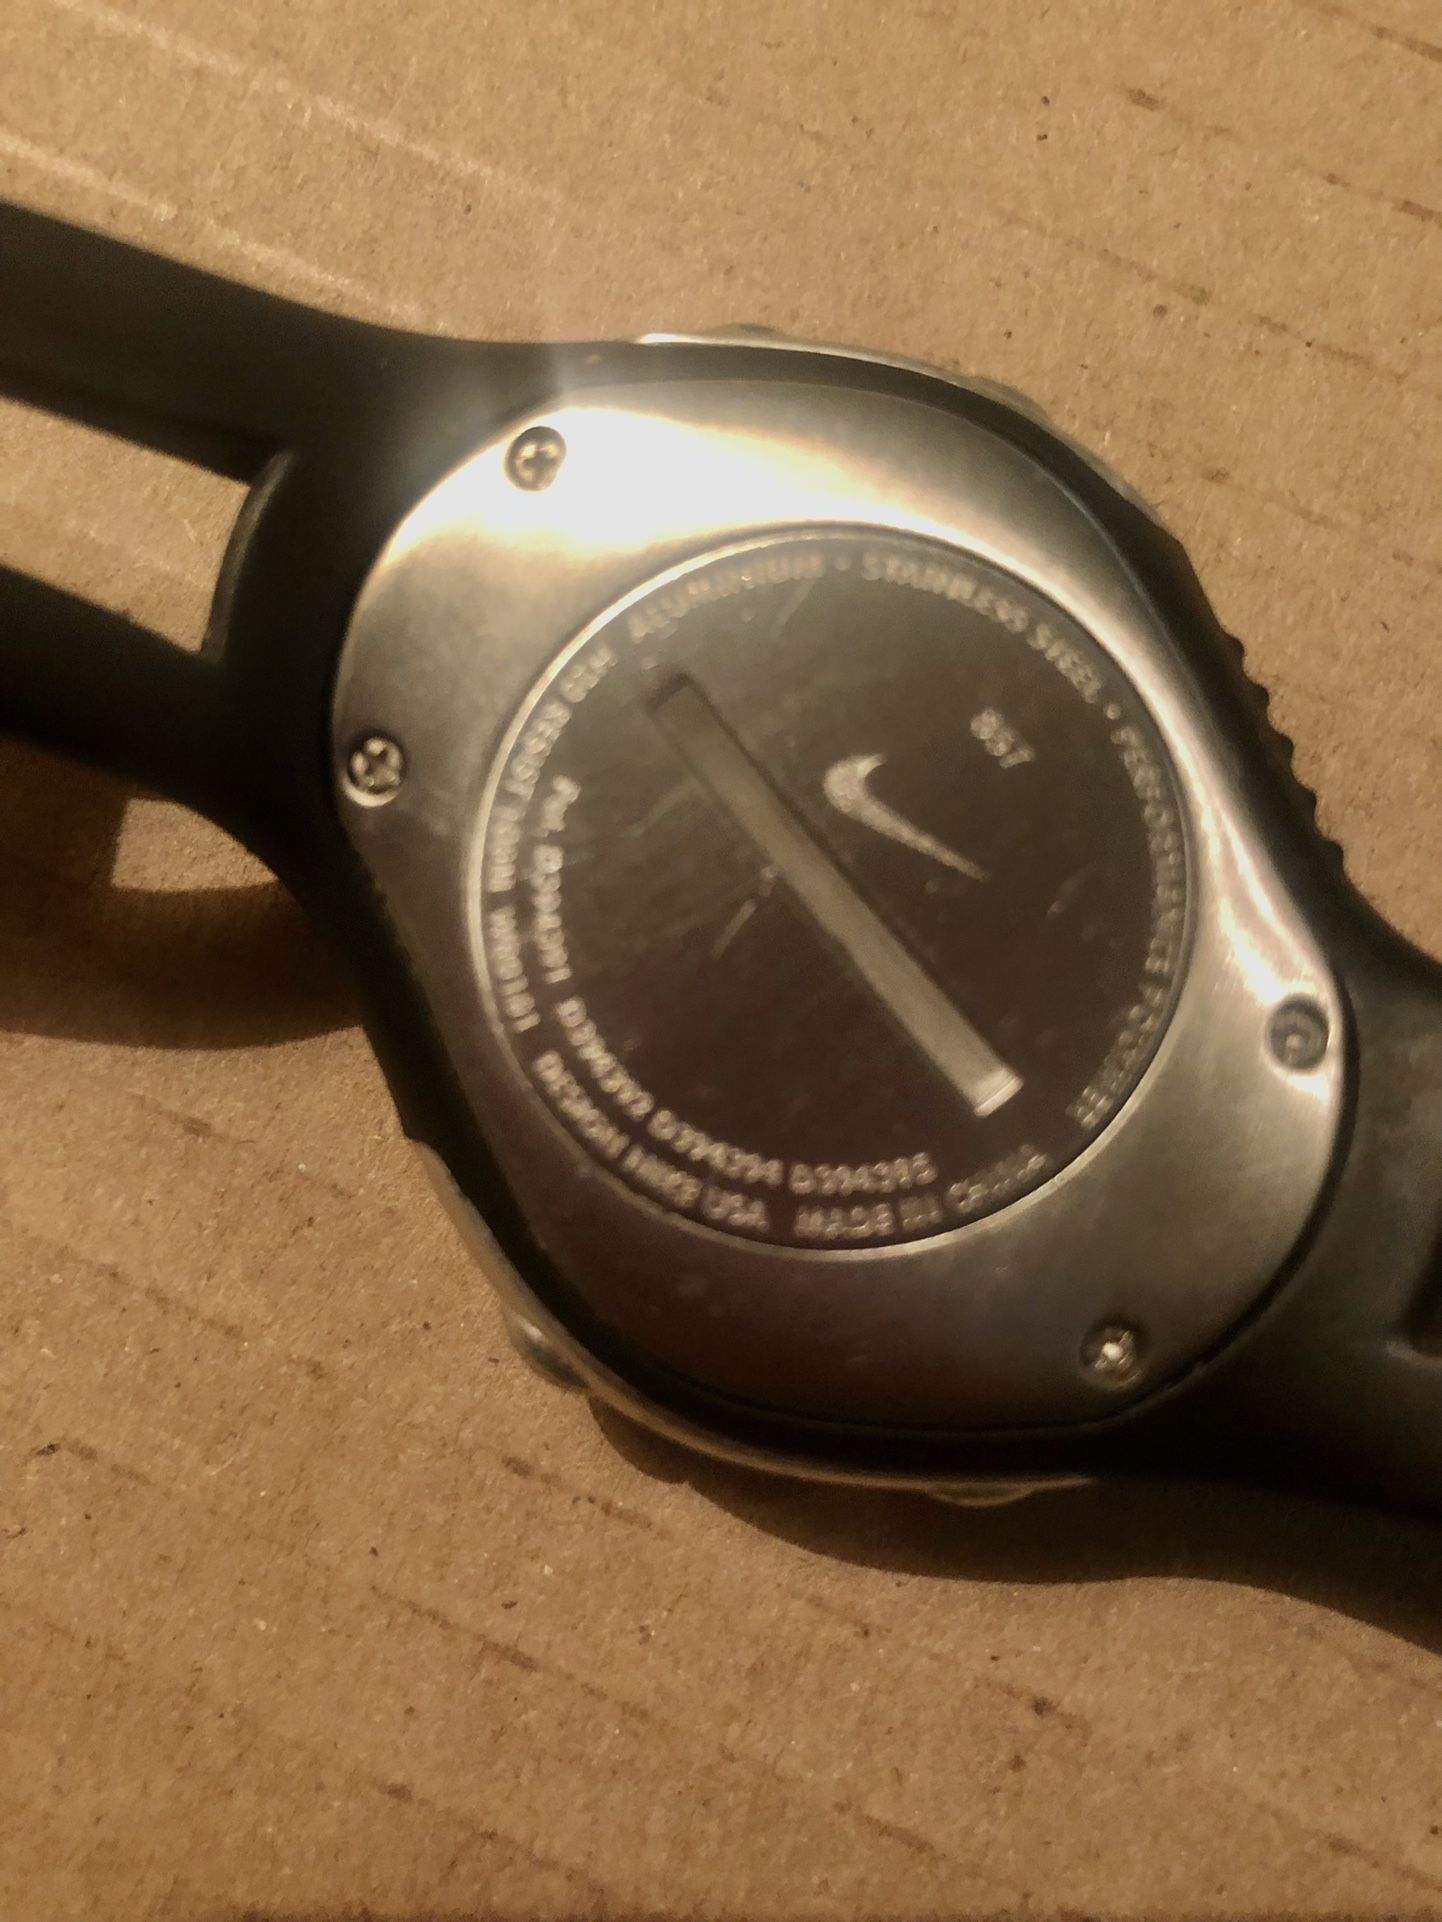 Nike Triax Speed 300 Model WR0101 Obsidian Sport Watch for Sale in